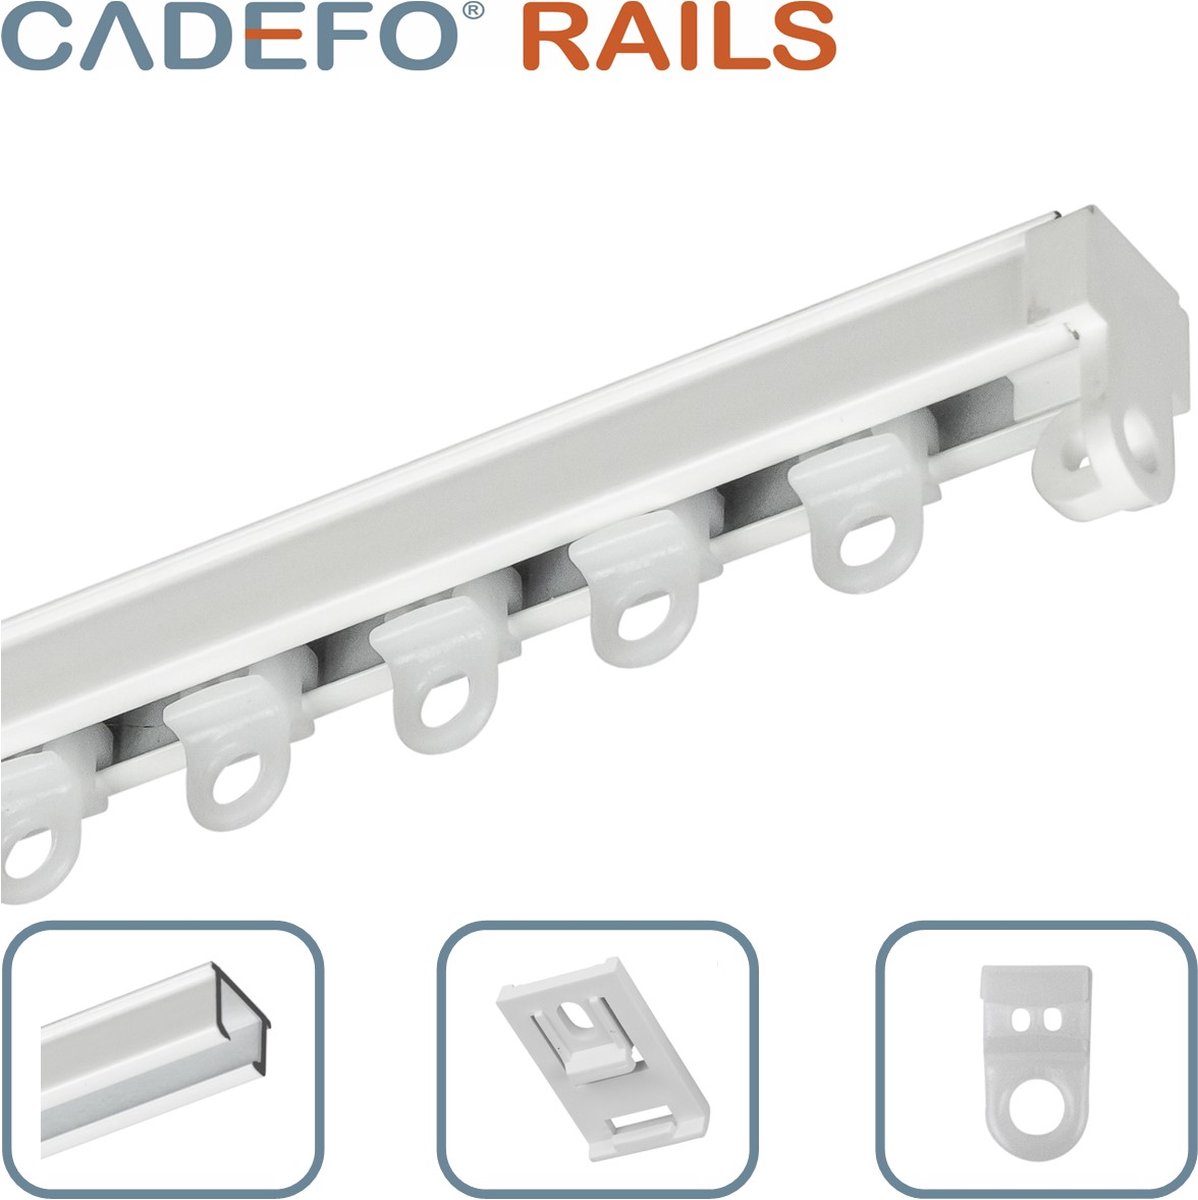 CADEFO RAILS (201 - 250 cm) Gordijnrails - Compleet op maat! - UIT 1 STUK - Leverbaar tot 6 meter - Plafondbevestiging - Lengte 247 cm